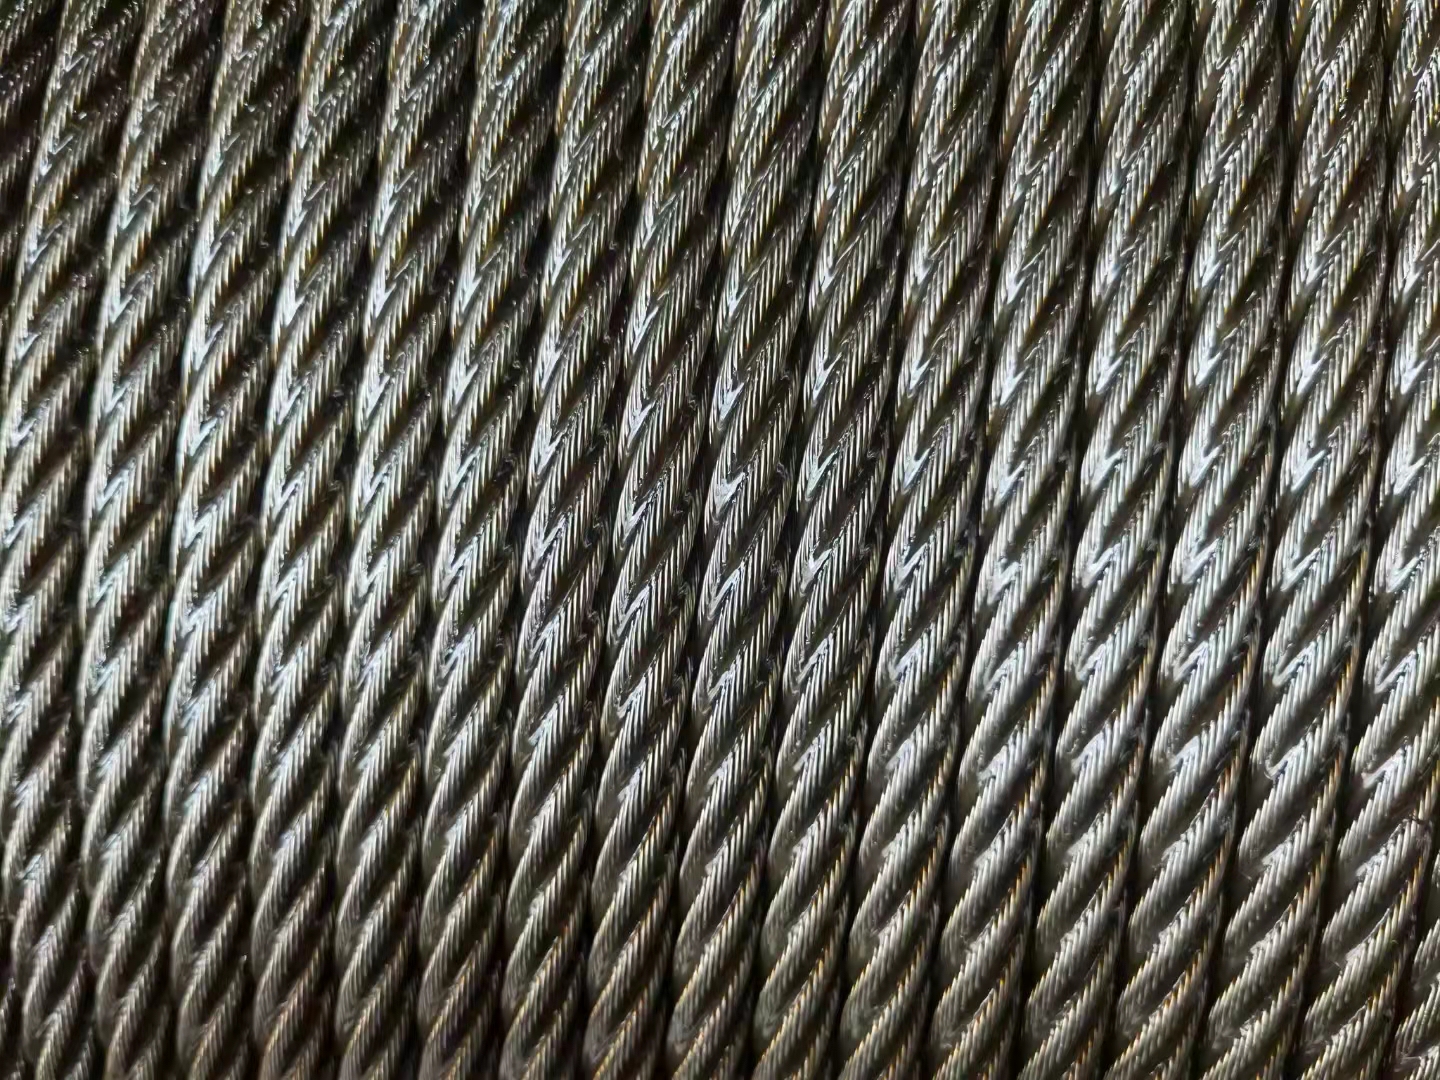 8 mm 9 mm 14 mm 16 mm 22 mm, 6X37 + iwrc cable de acero galvanizado cable de grúa cable de elevación de elevación